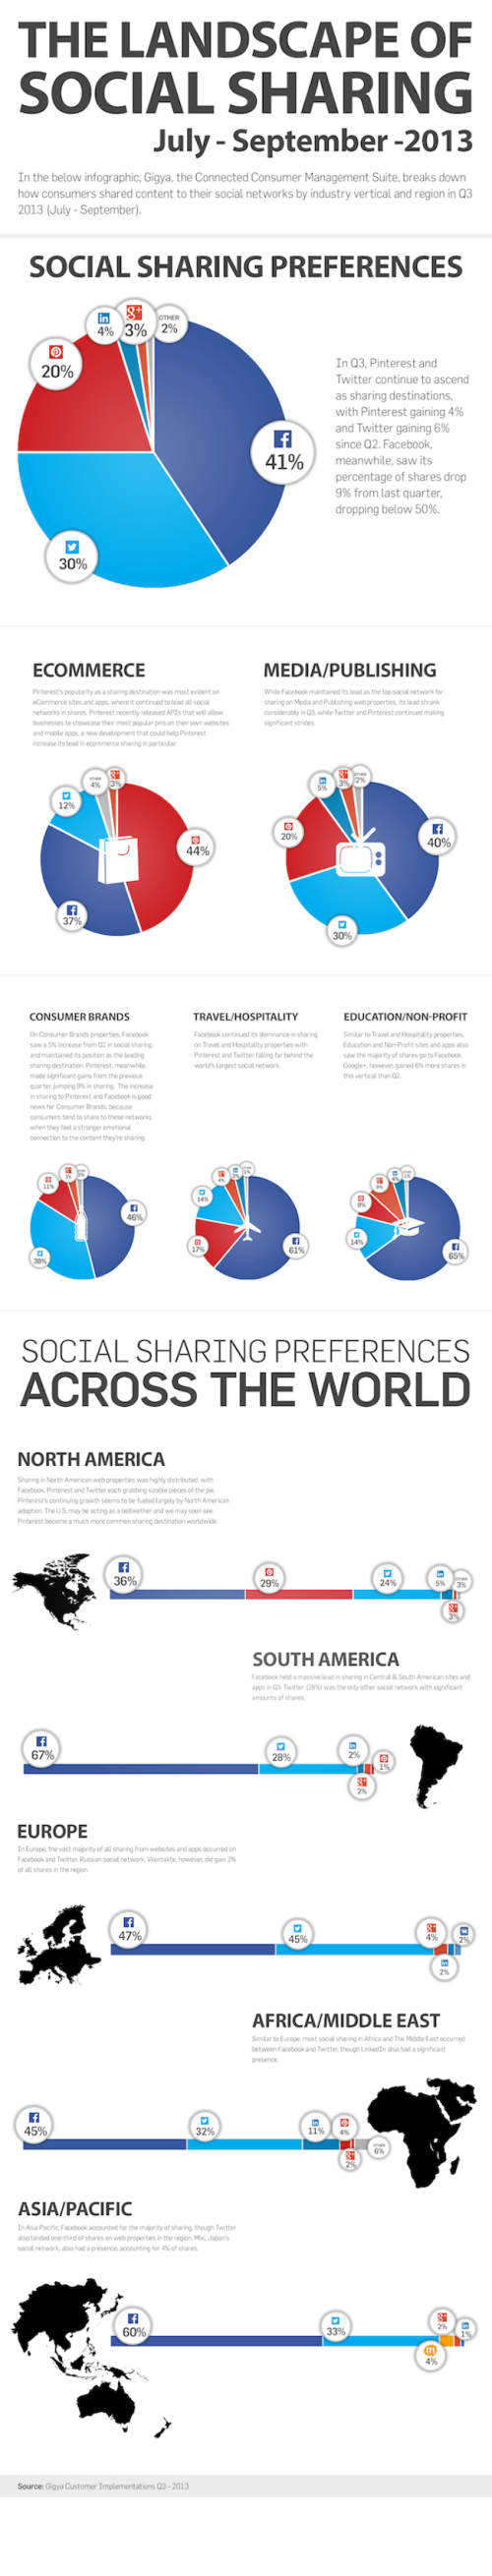 Gigya_Sharing_Infographic_Q3_2013-1